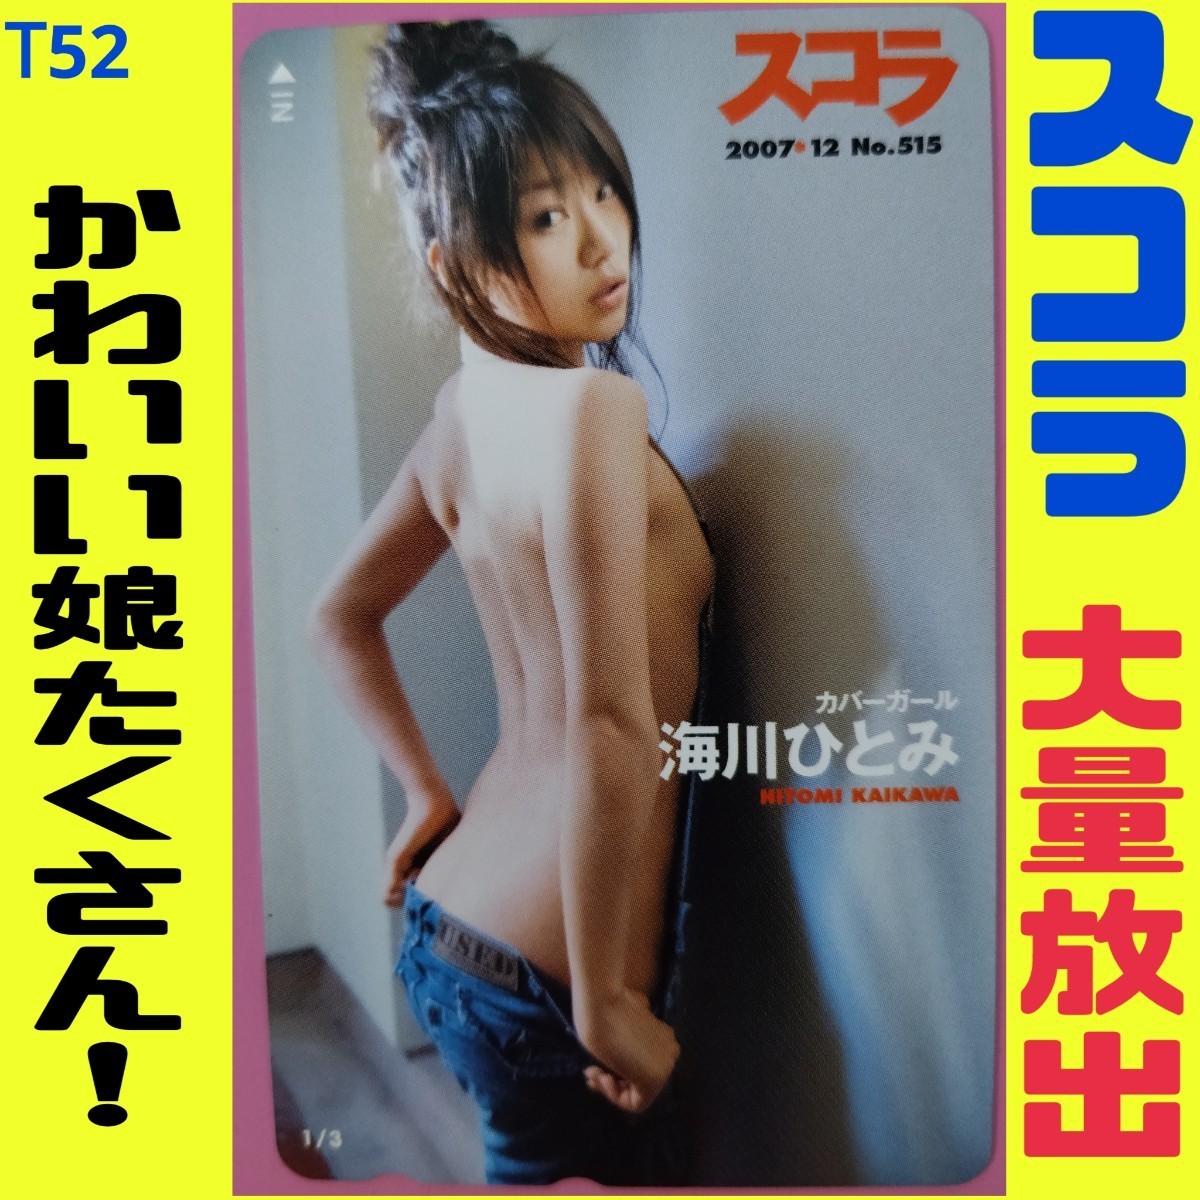 T52 ◆ Неиспользуемая телефонная карта супер дешево! [Hitomi Kaikawa] ◆ Скора // Красивая девочка Gravure Actress Actress Teleca [Анонимная доставка душевного спокойствия! Компенсация / отслеживание]